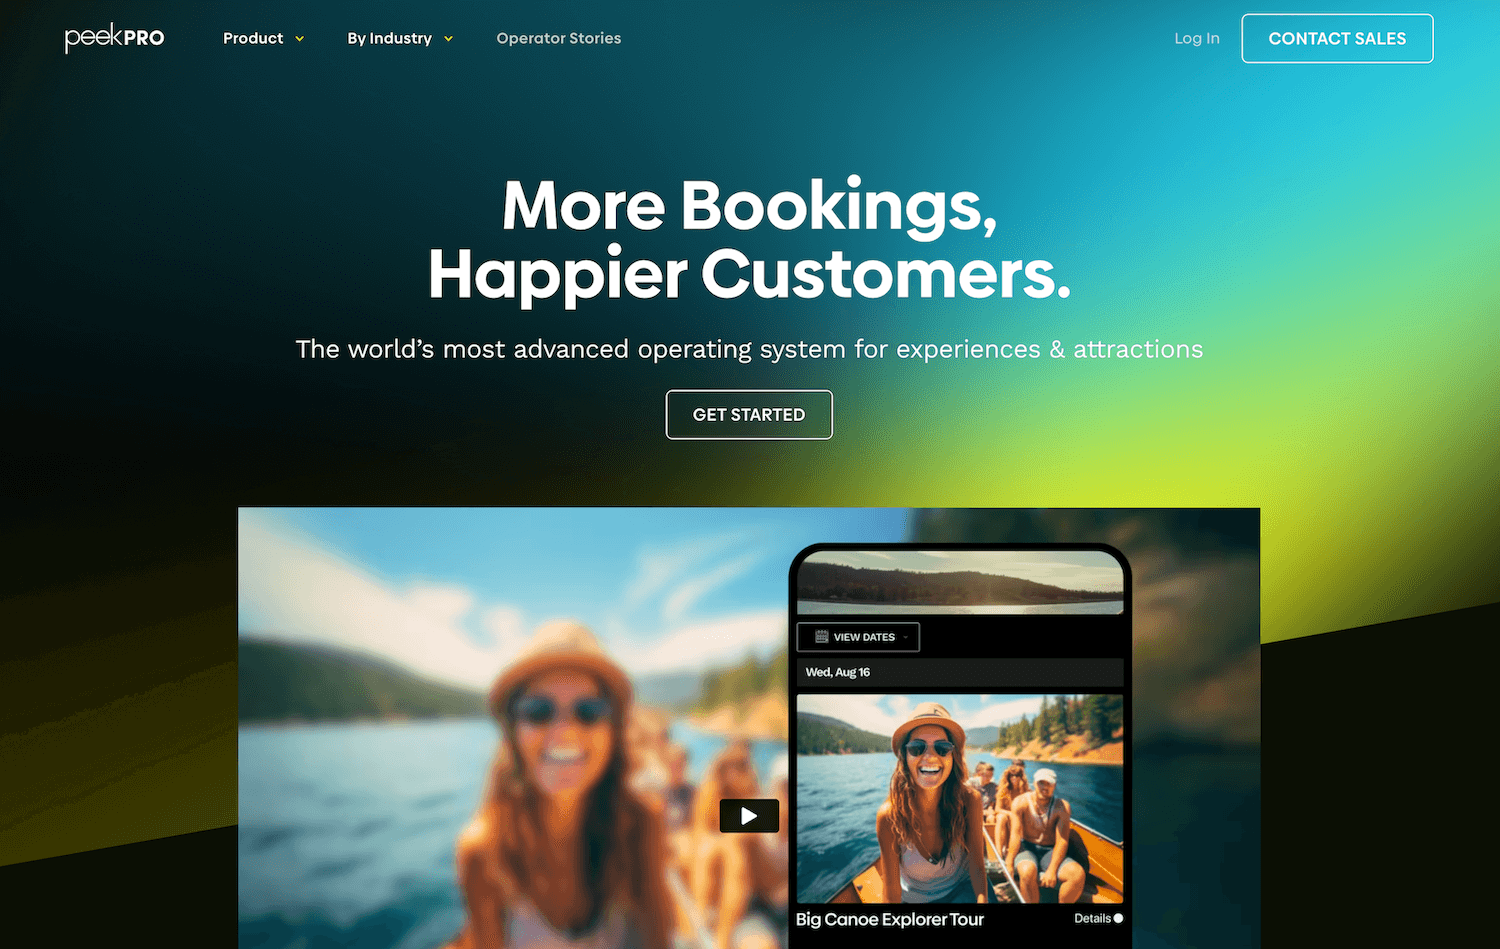 Peek Pro homepage: More Bookings, Happier Customers.